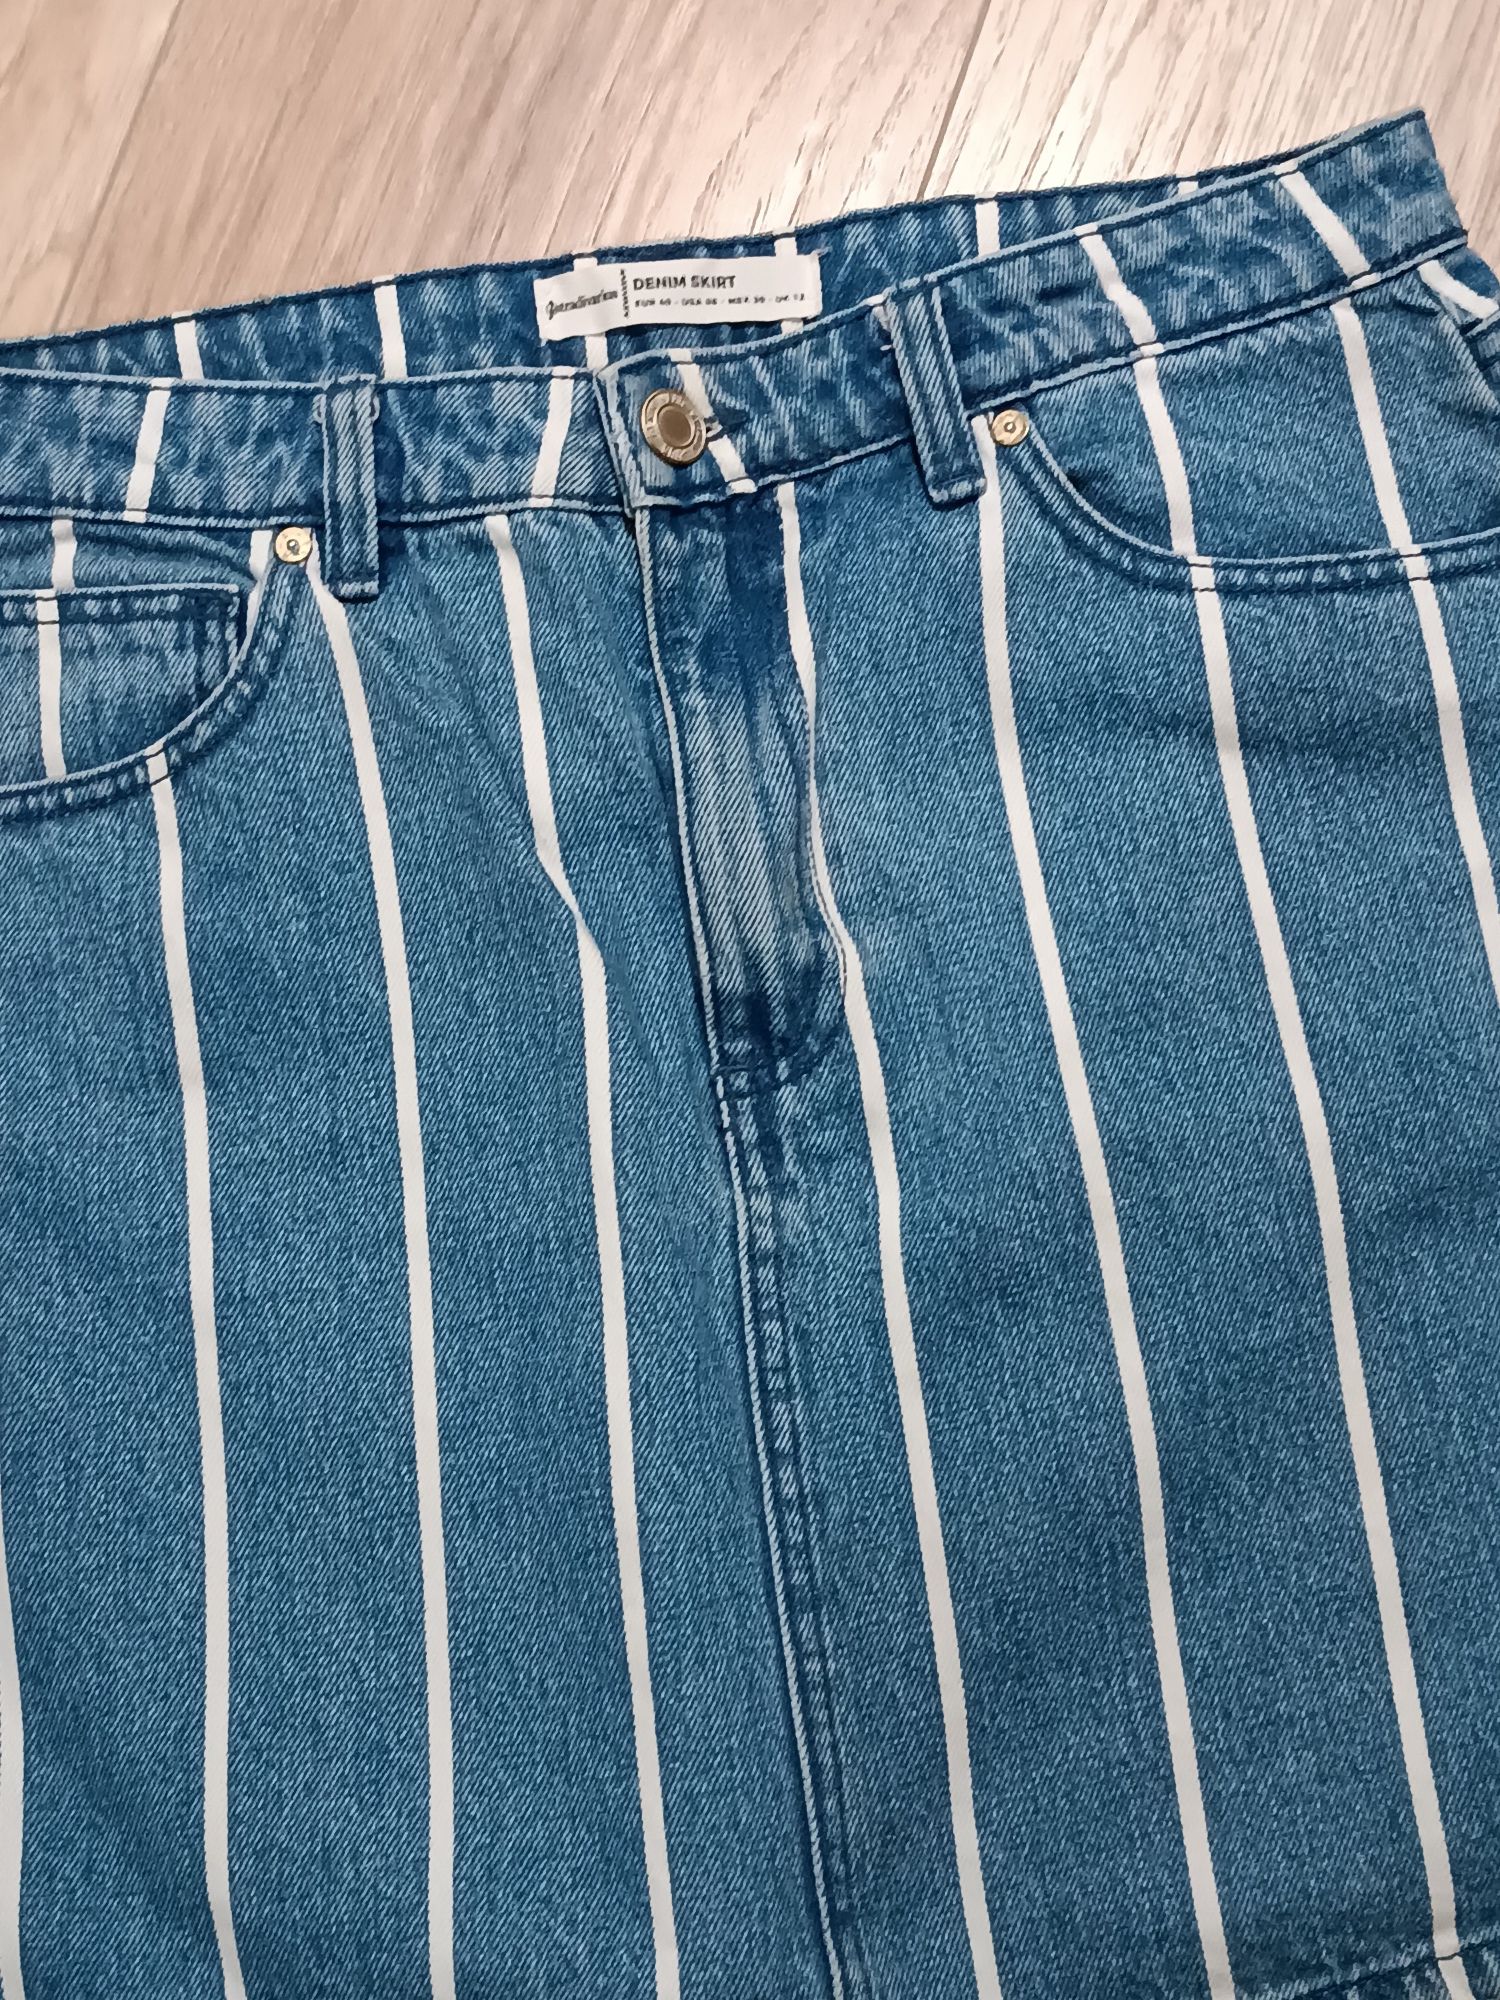 Jeansowa krótka spódniczka w białe paski L 40 do połowy uda